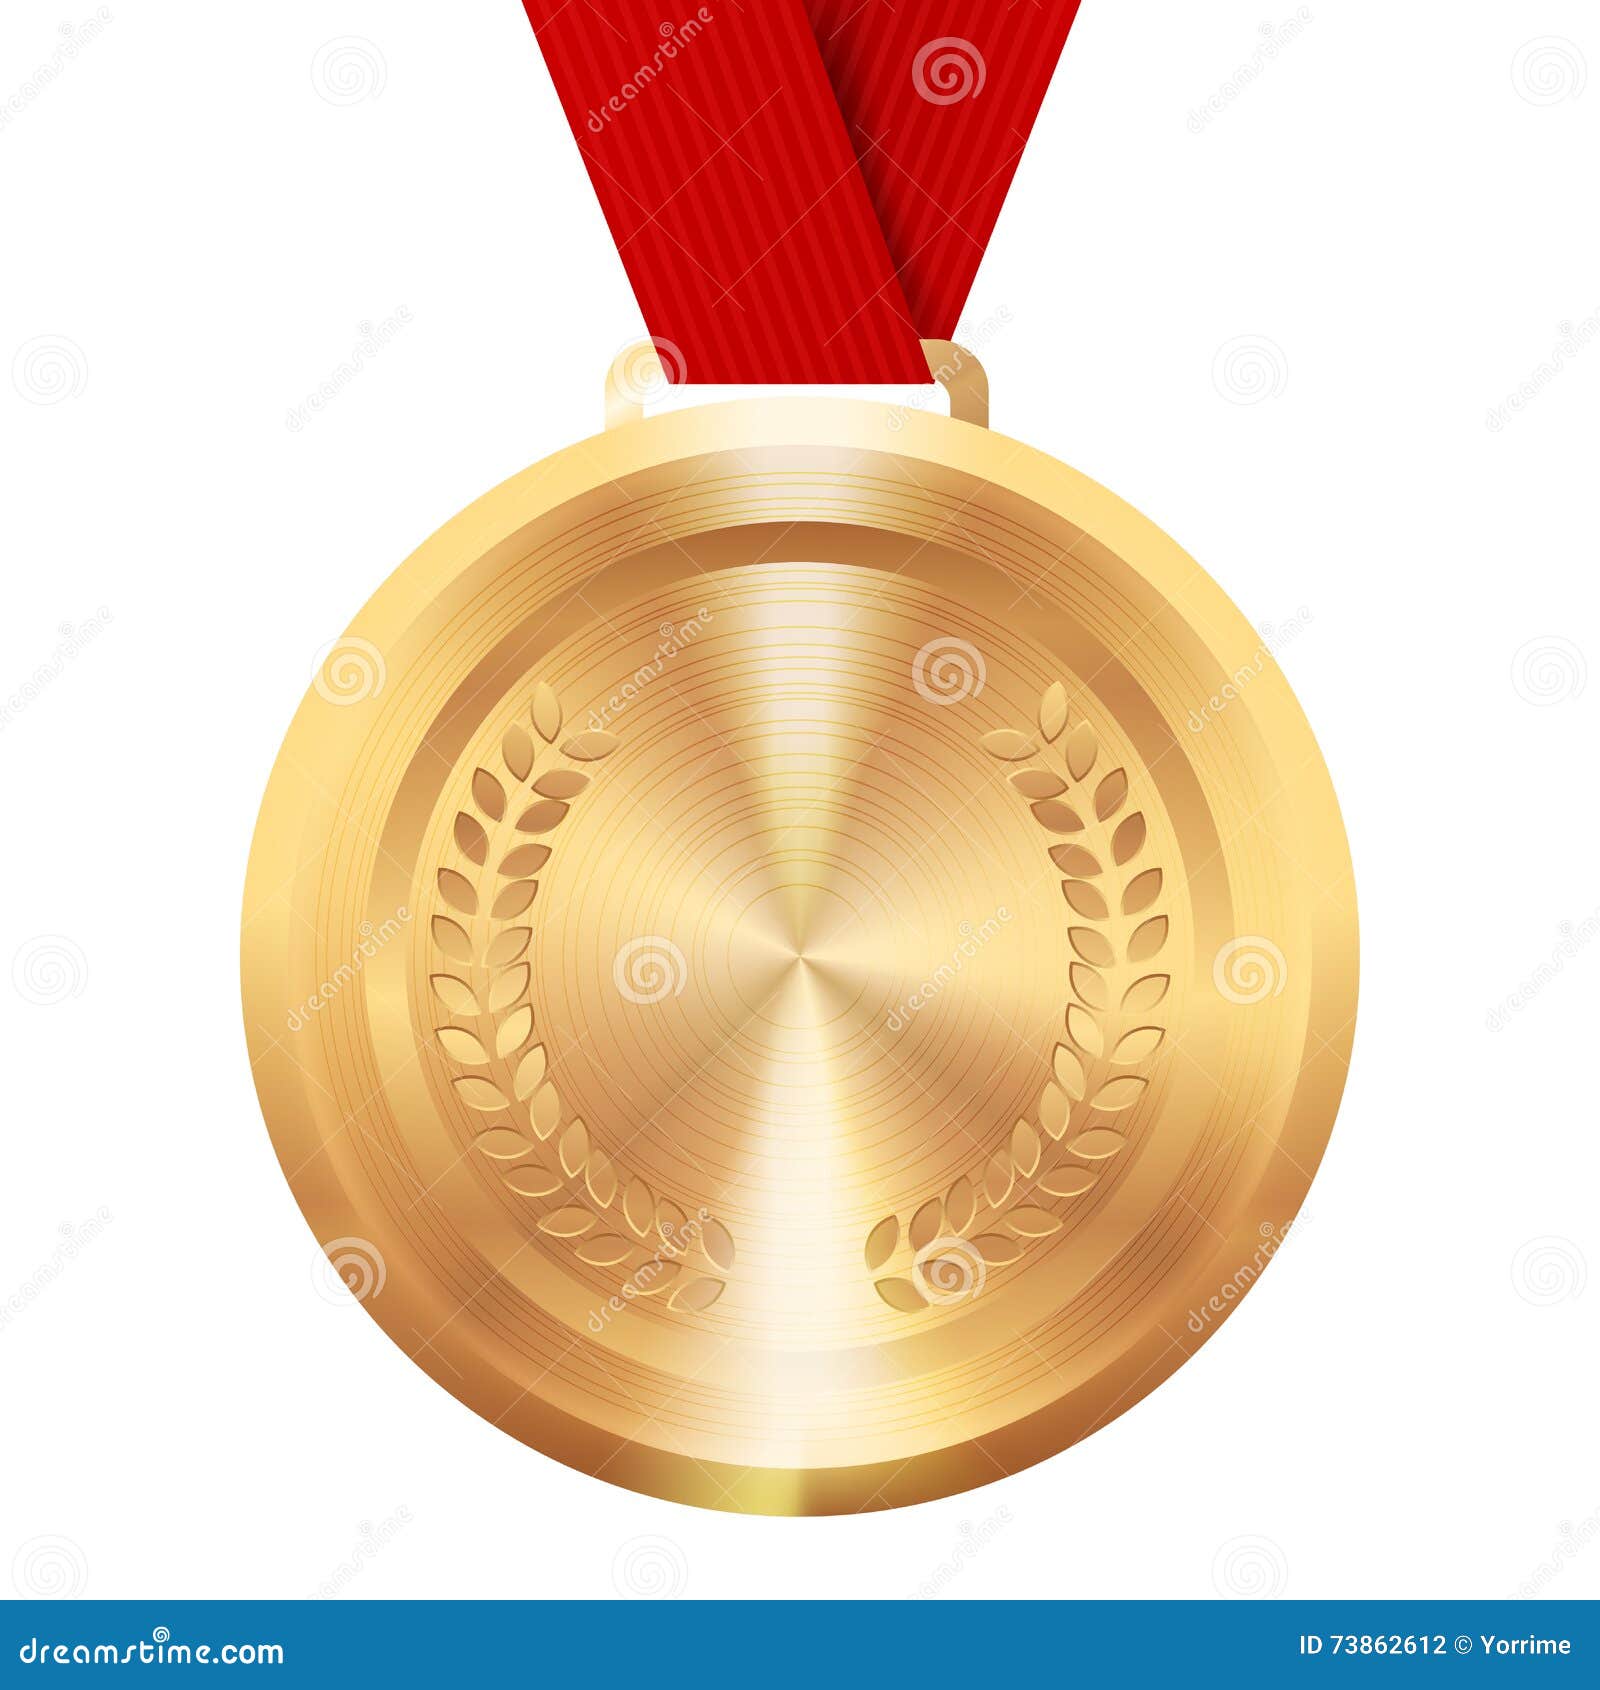 Награда победительницы конкурса. Медаль победитель. Медаль призер. Медаль финалиста. Золотая медаль победителя.